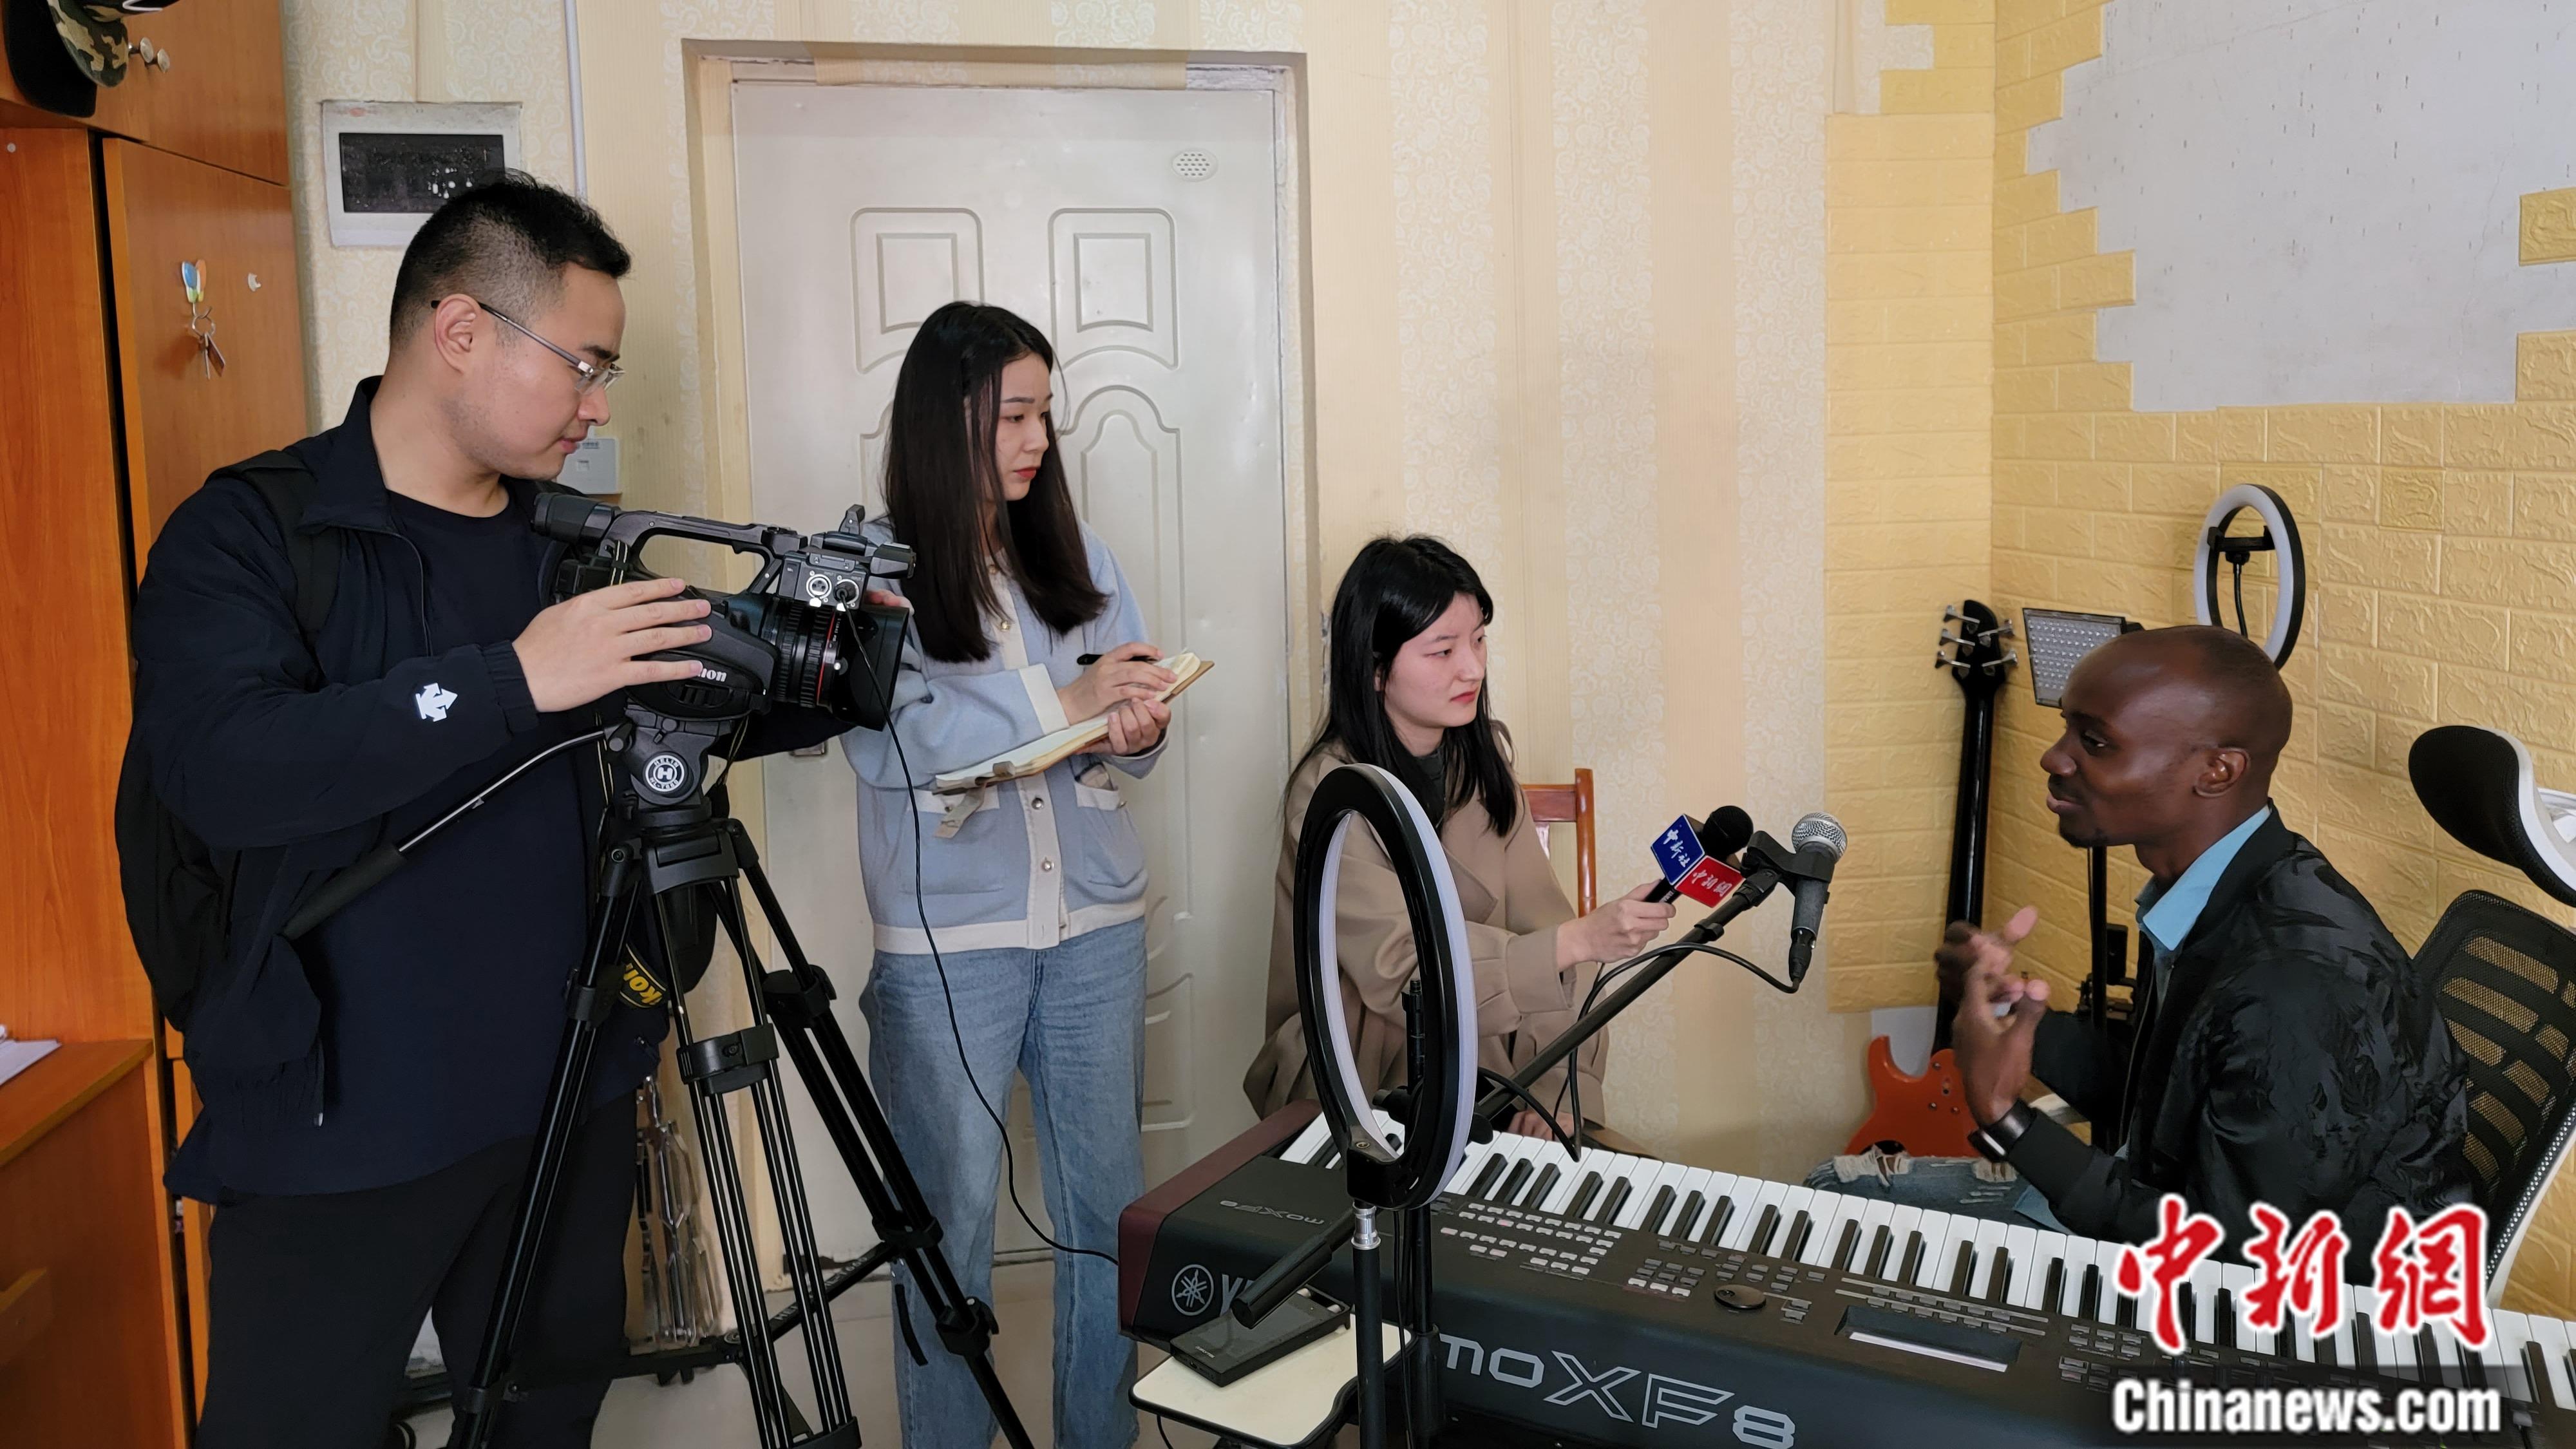 معرفی چین از طریق تشکیل گروه‌های موسیقی توسط دانشجویان خارجی در چینا